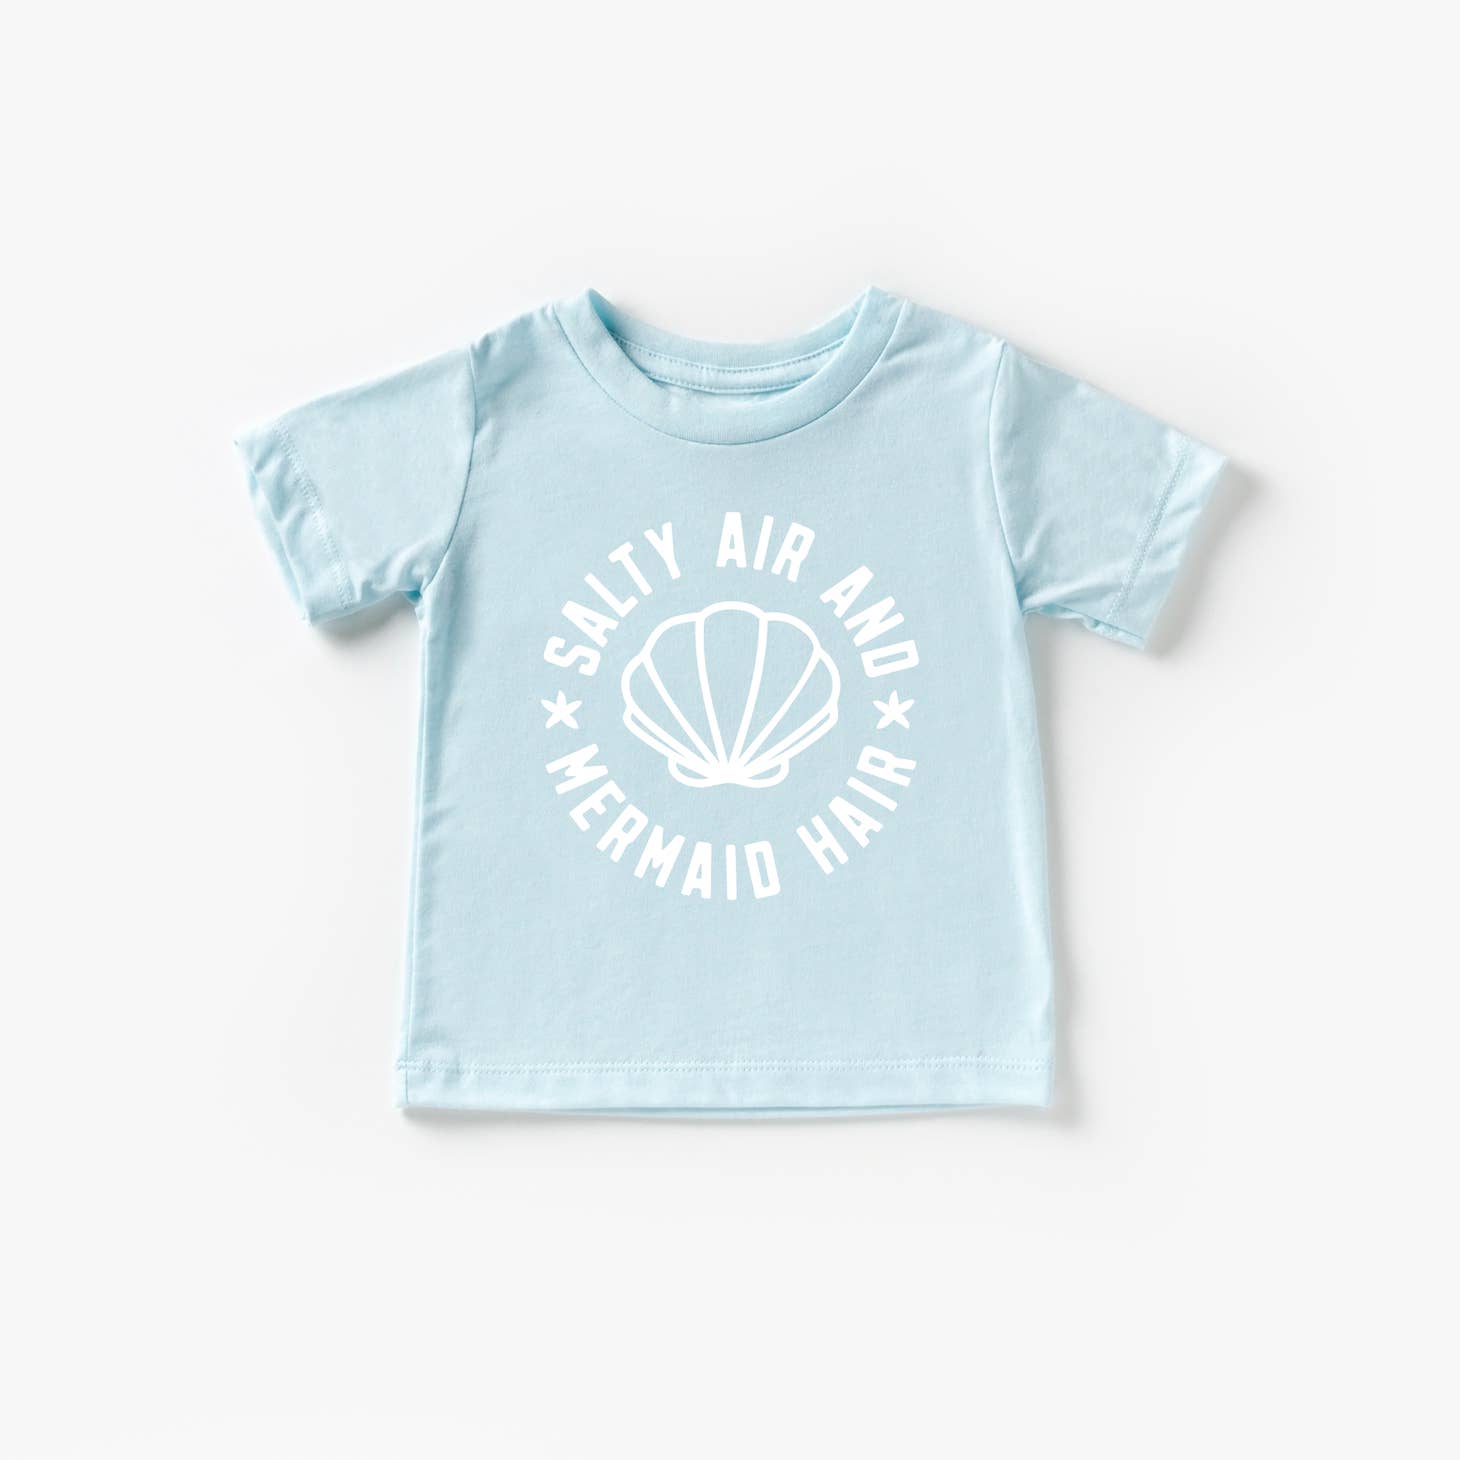 Salty Air and Mermaid Hair T-Shirt